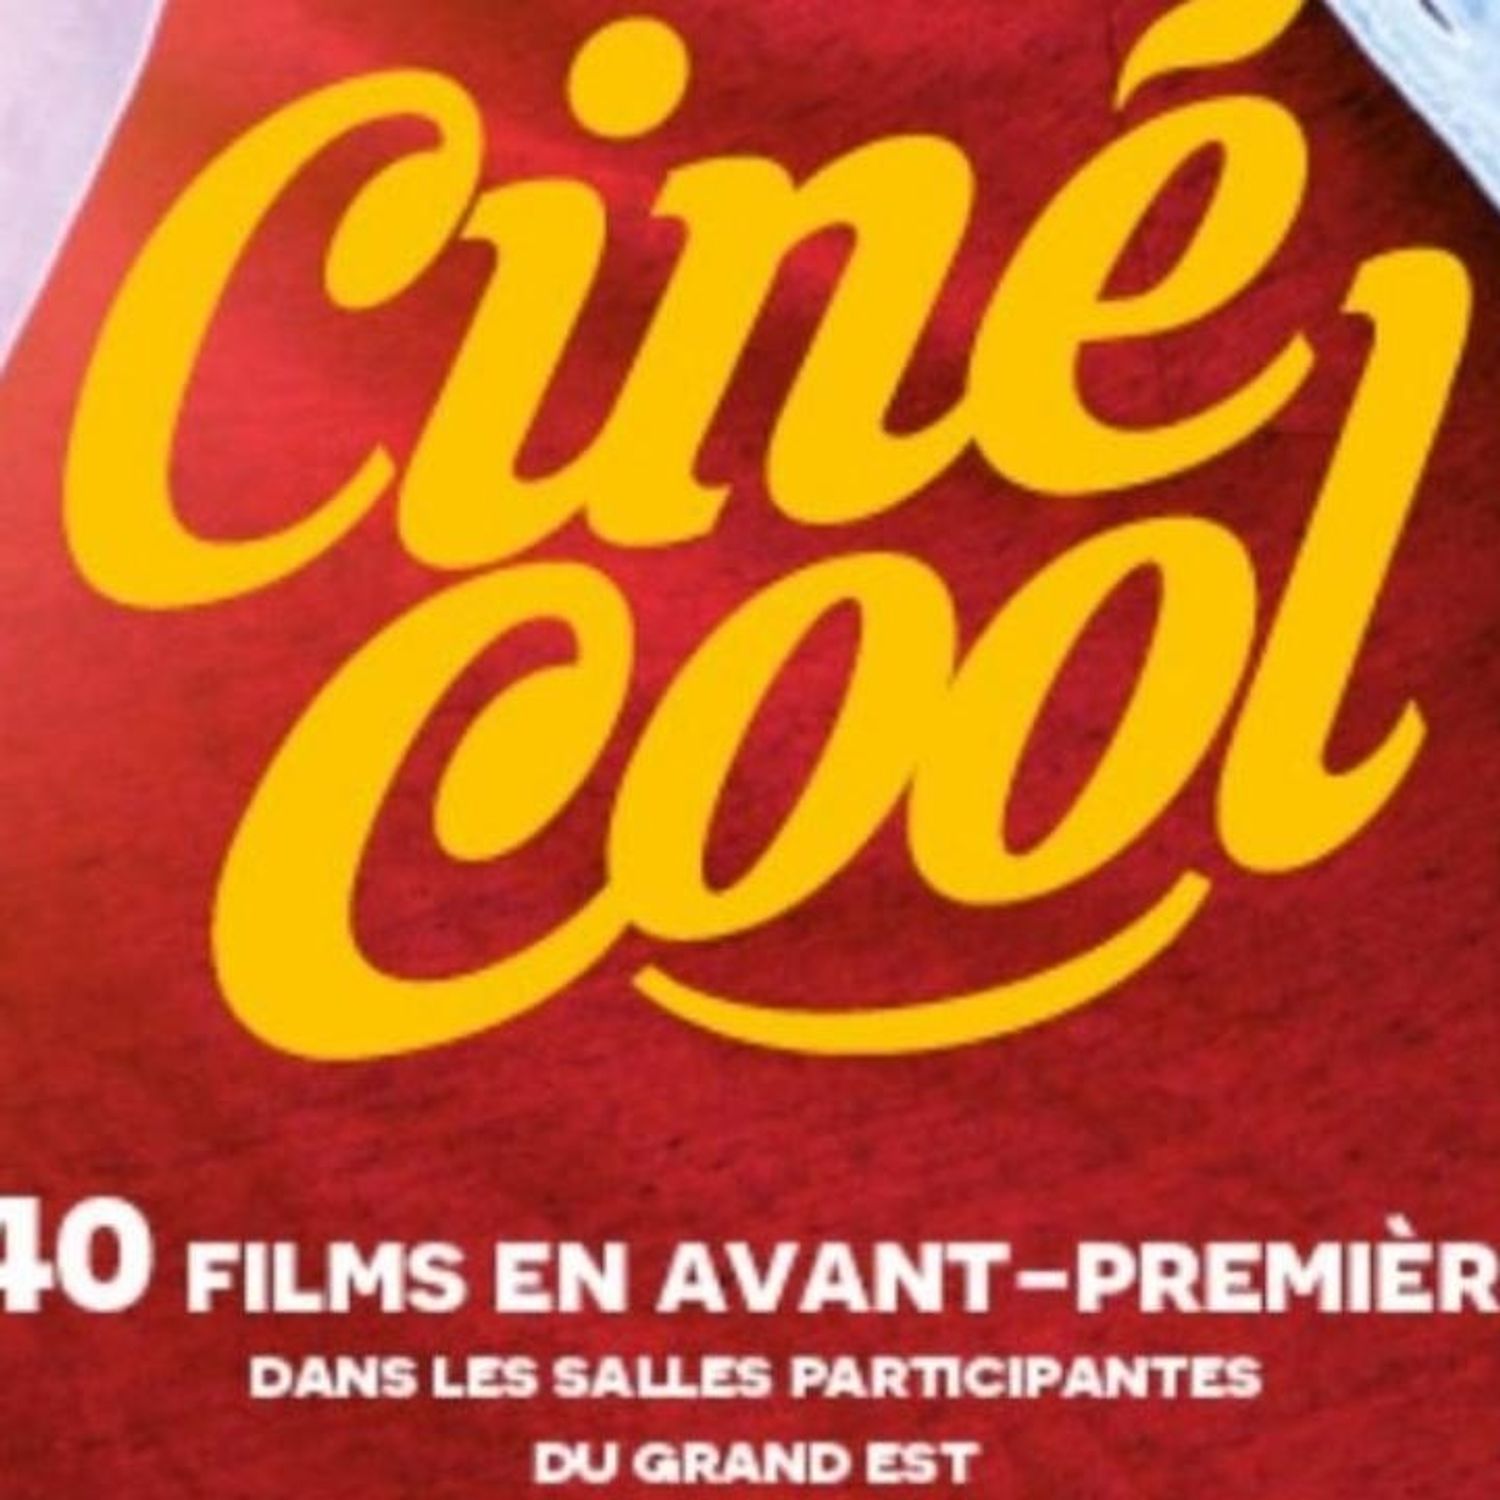 Retour de Ciné-Cool : opération ciné à petit prix ! 